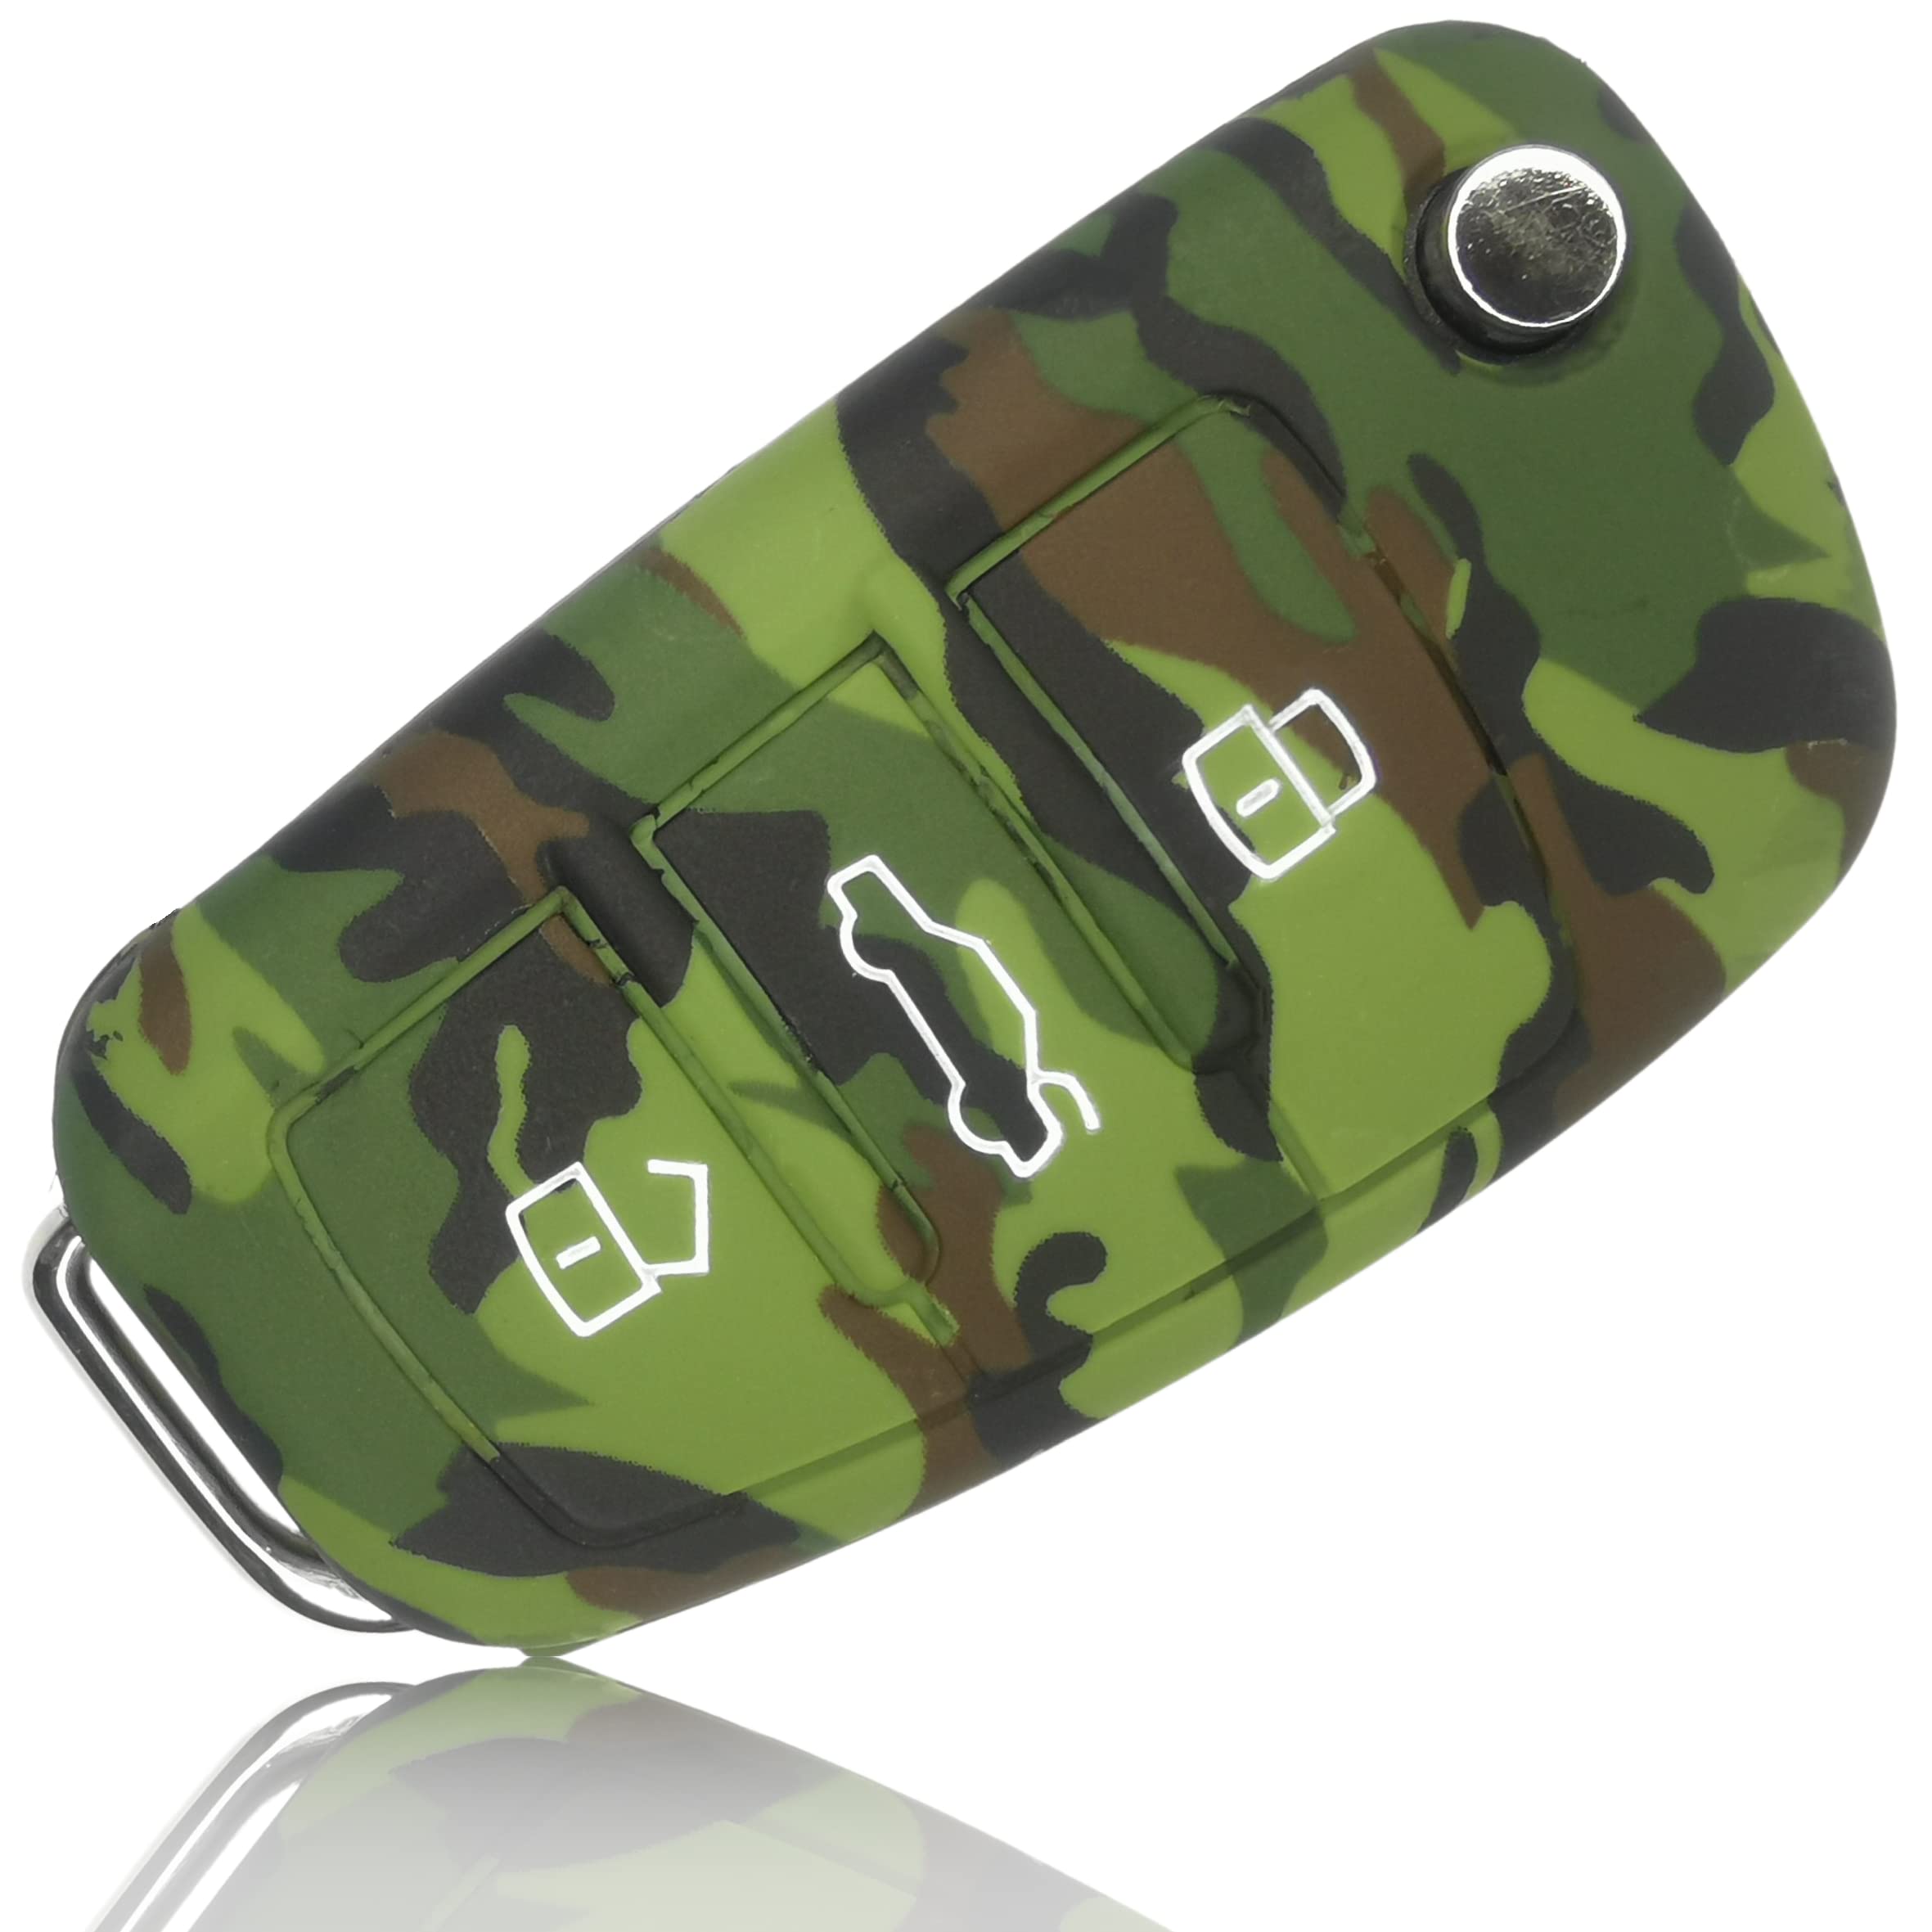 stylé  FOAMO Coque de protection en silicone pour clé de voiture compatible avec Audi à 3 boutons – Motif camouflage vert foncé/marron/beige e3vo7CGga bien vendre